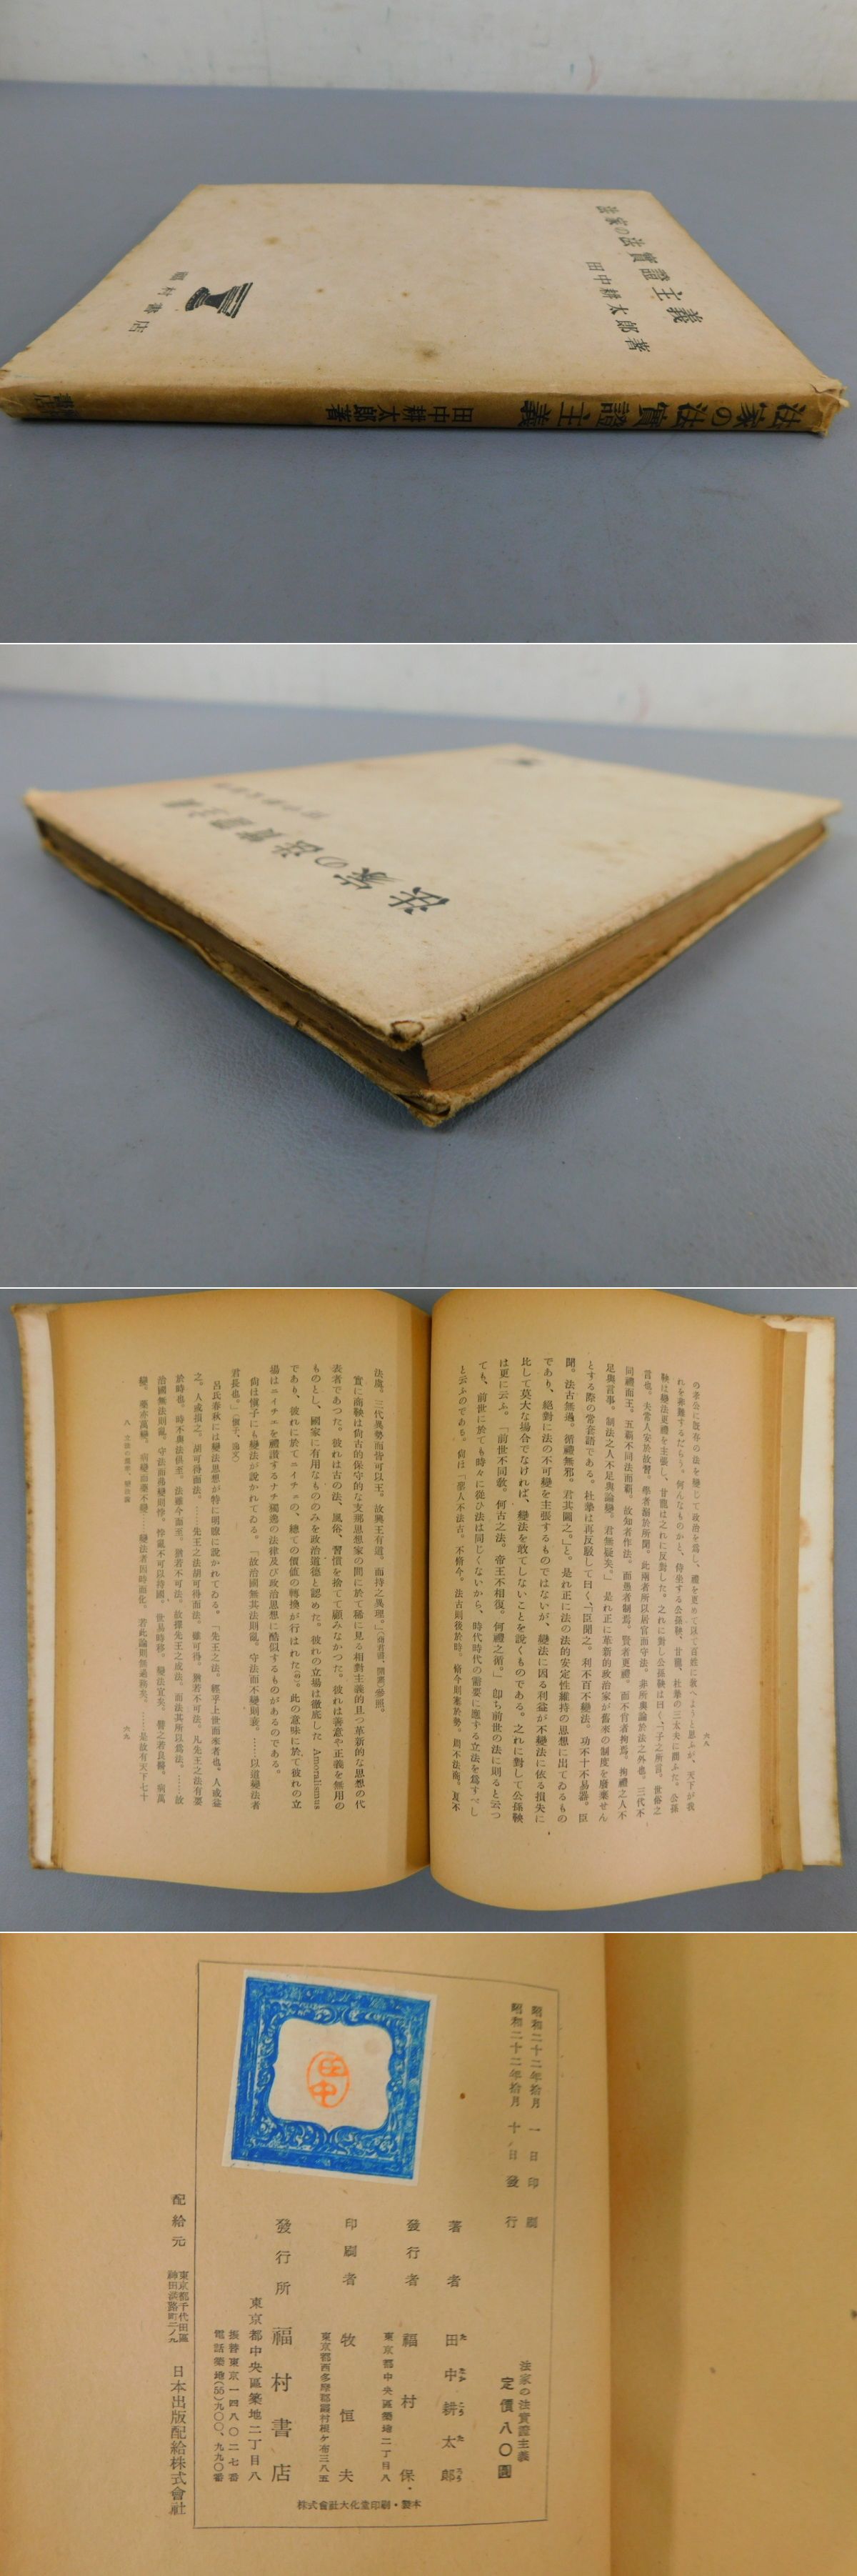 法家の法實證主義(田中耕太郎) / 古本、中古本、古書籍の通販は「日本の古本屋」